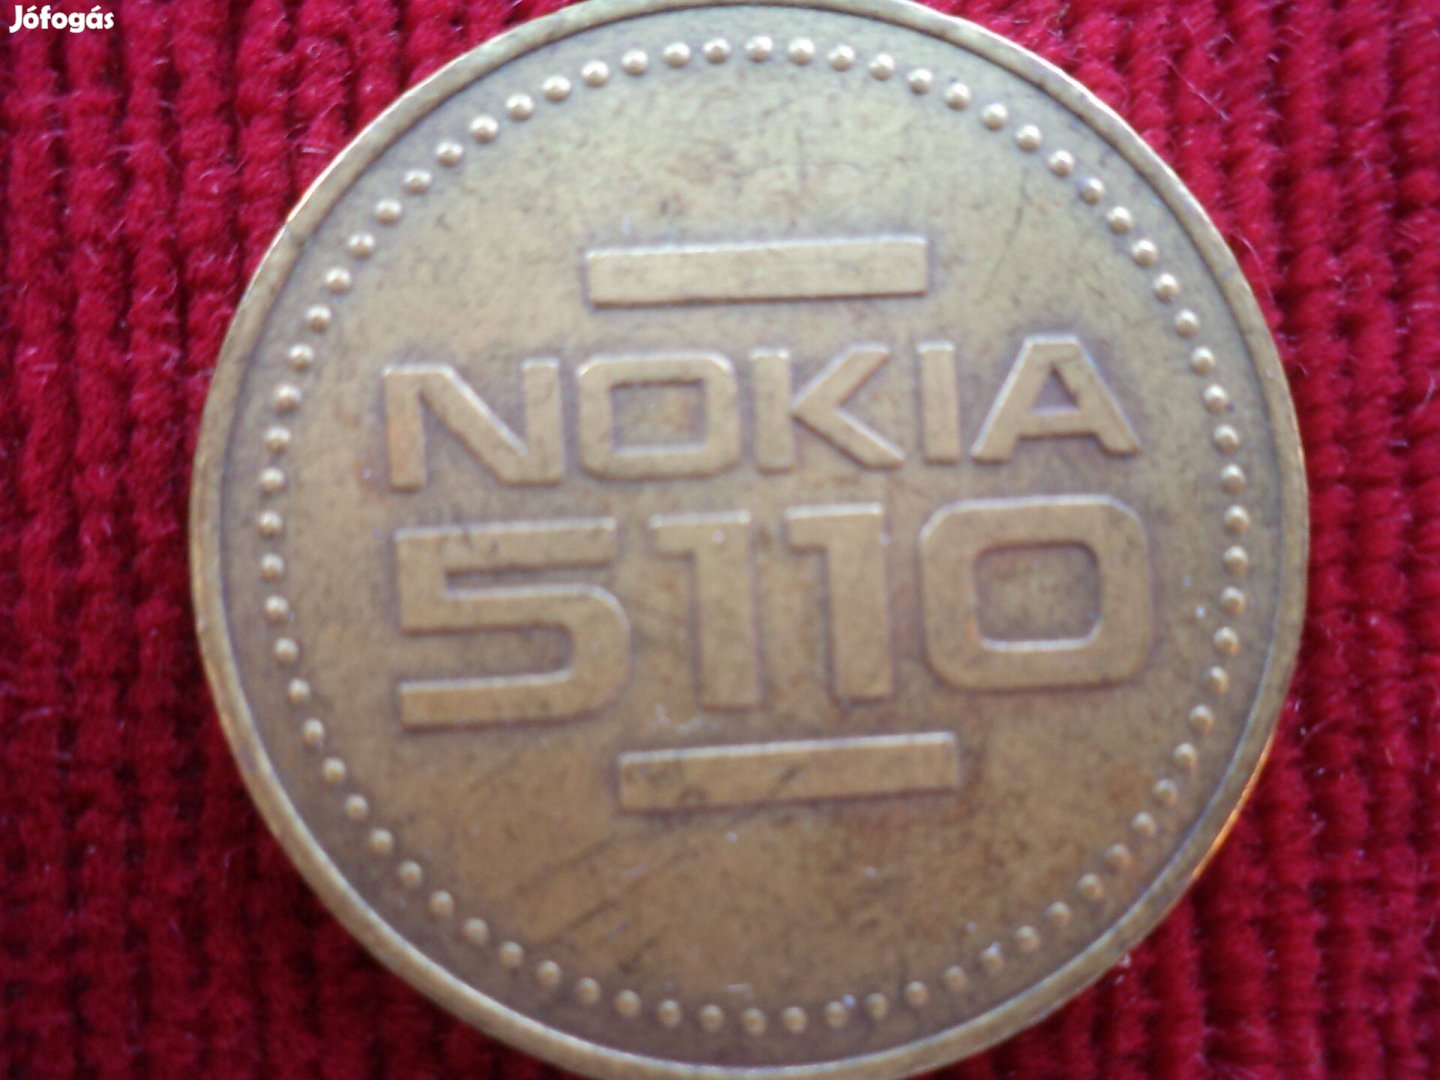 Nokia S110 emlékplakett eladó